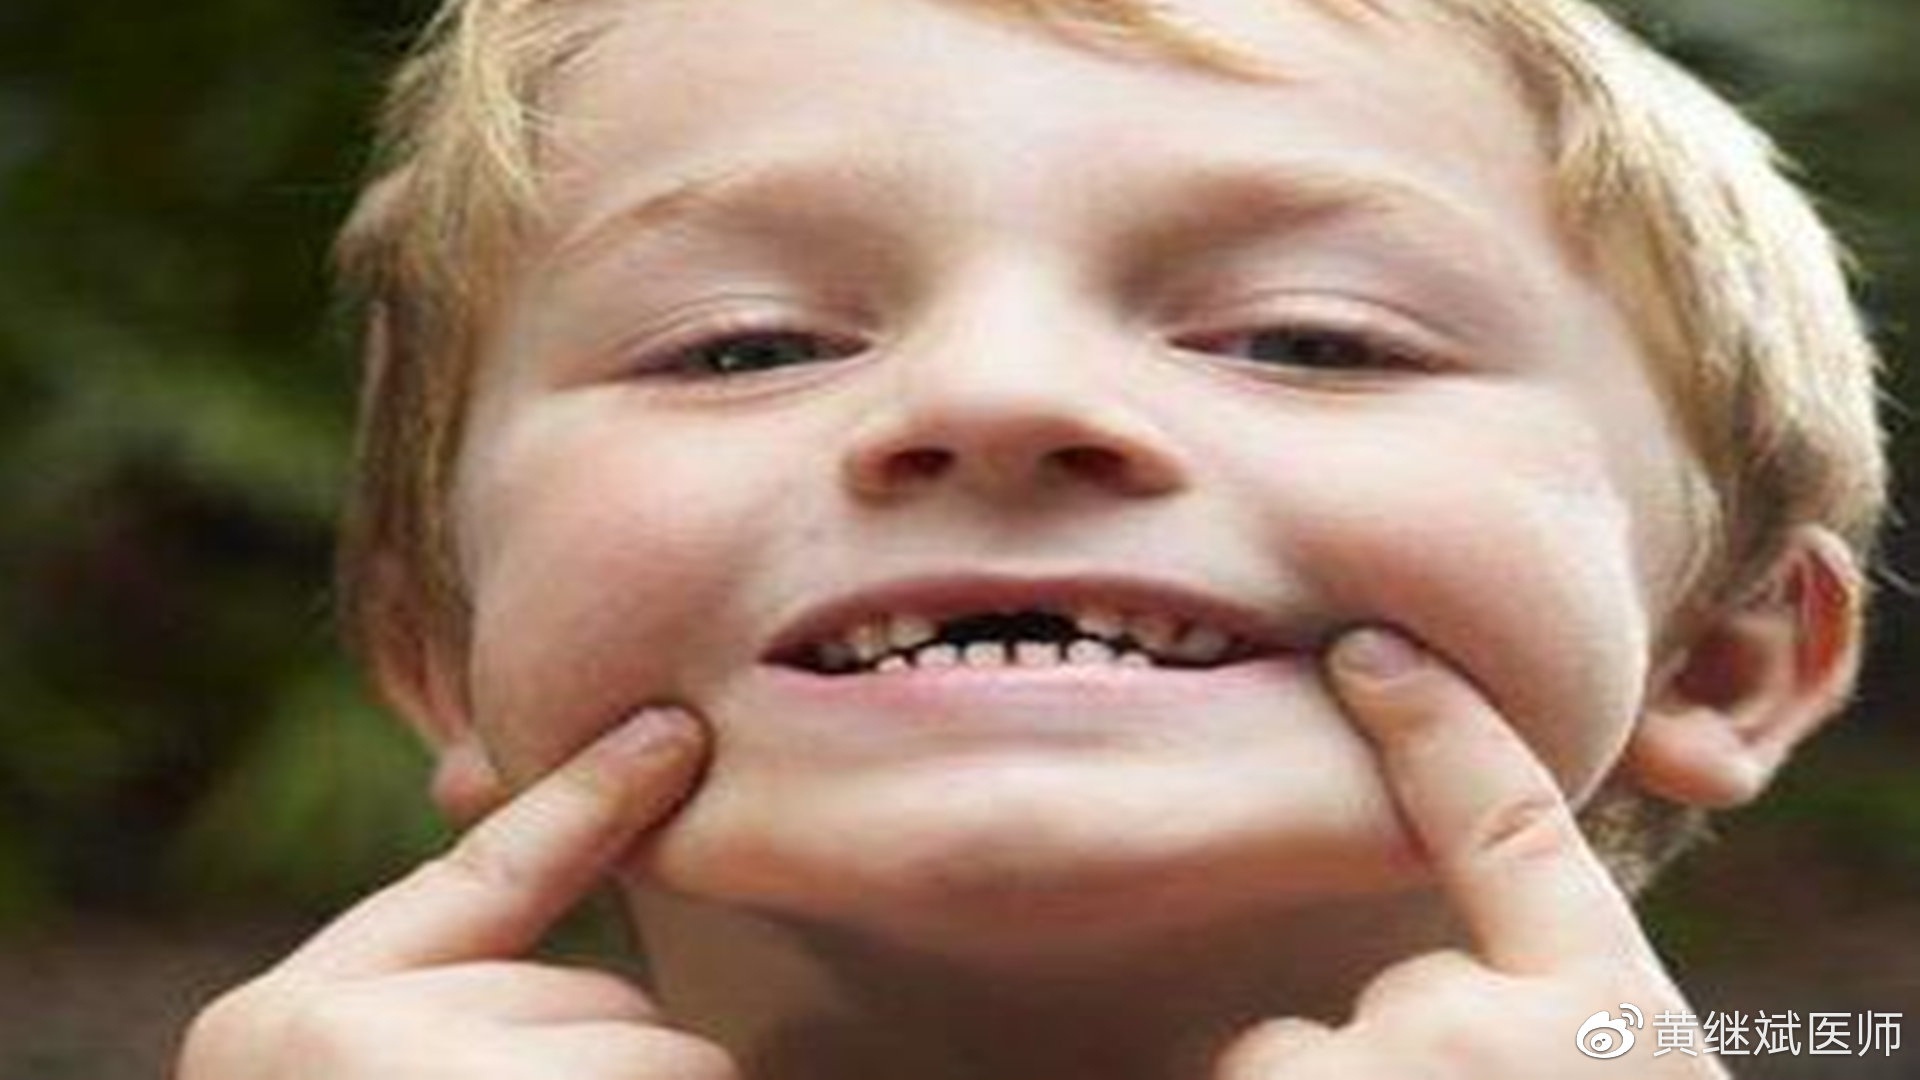 牙齿换牙时间顺序图，孩子4岁开始换牙，现在刚满6岁已经换第7颗牙了，正常吗